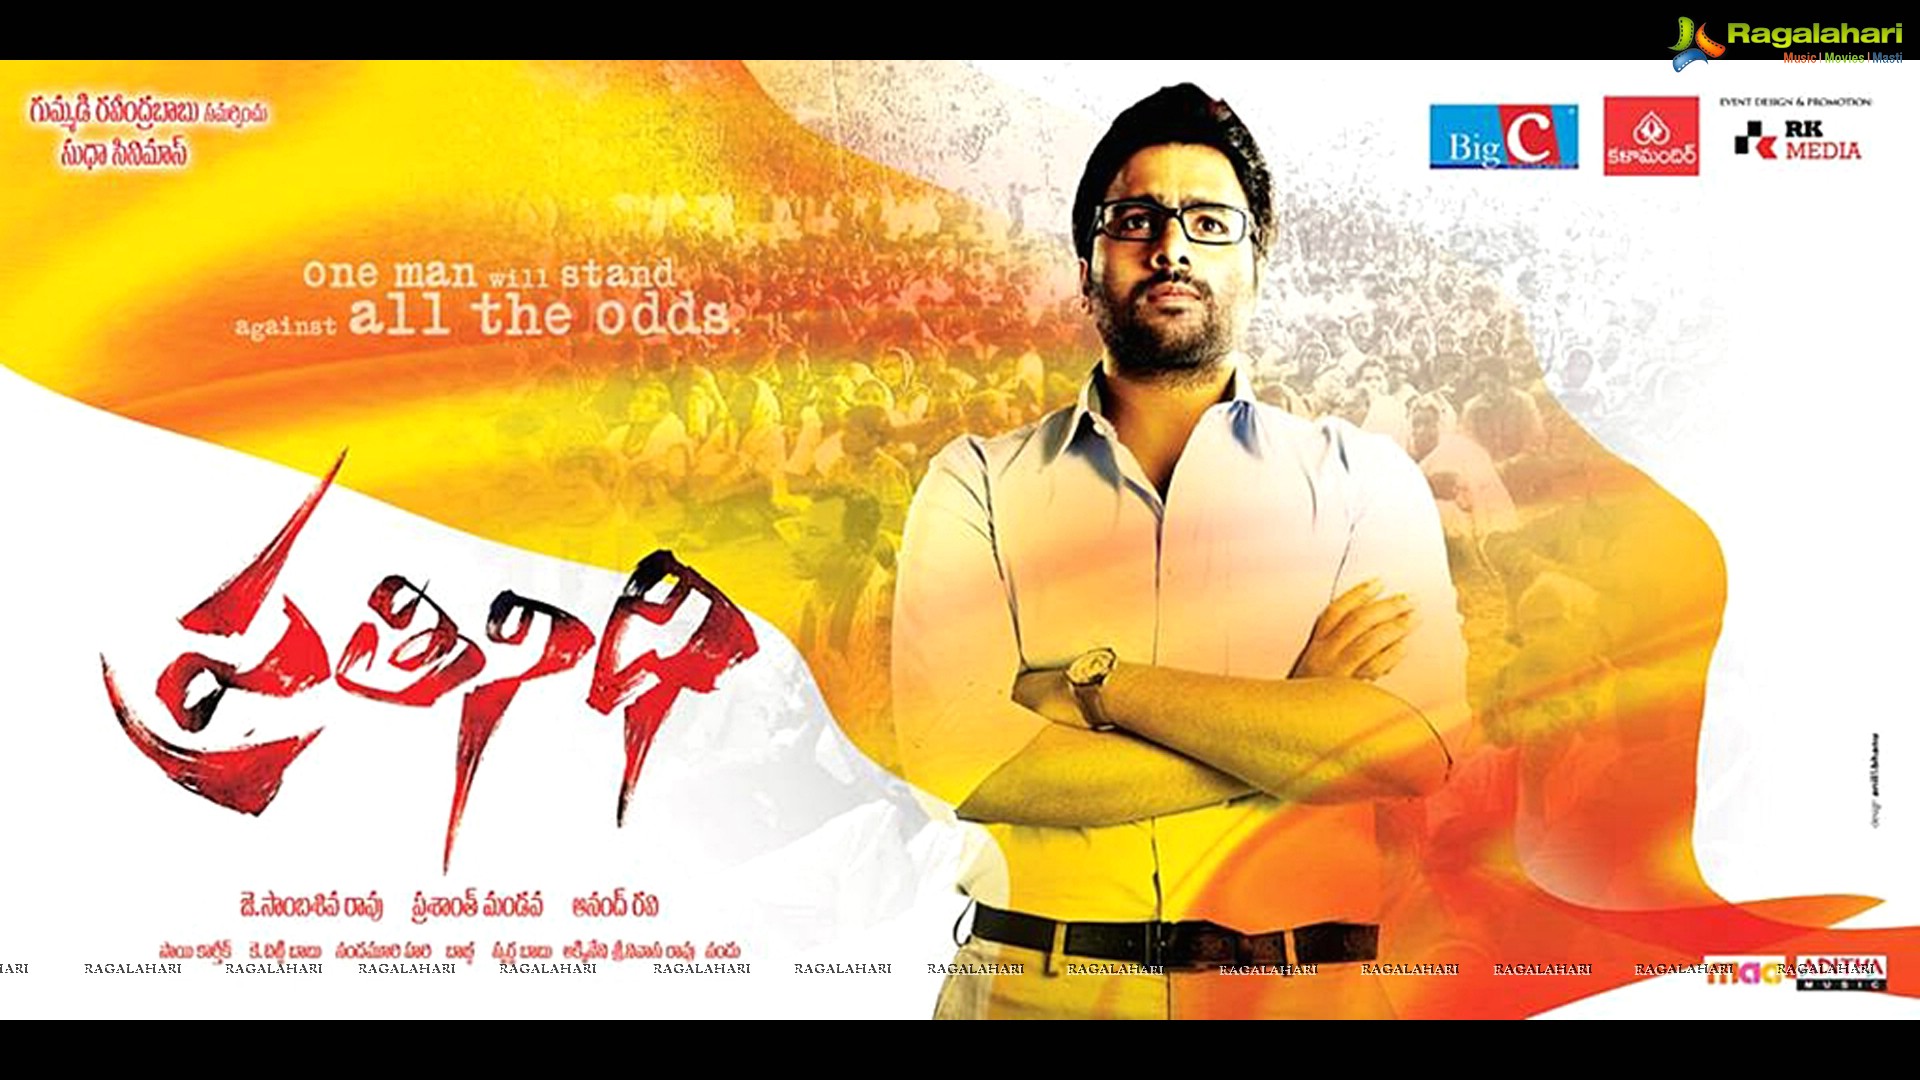 Khiladiyon Ka Khiladi tamil movie  for free